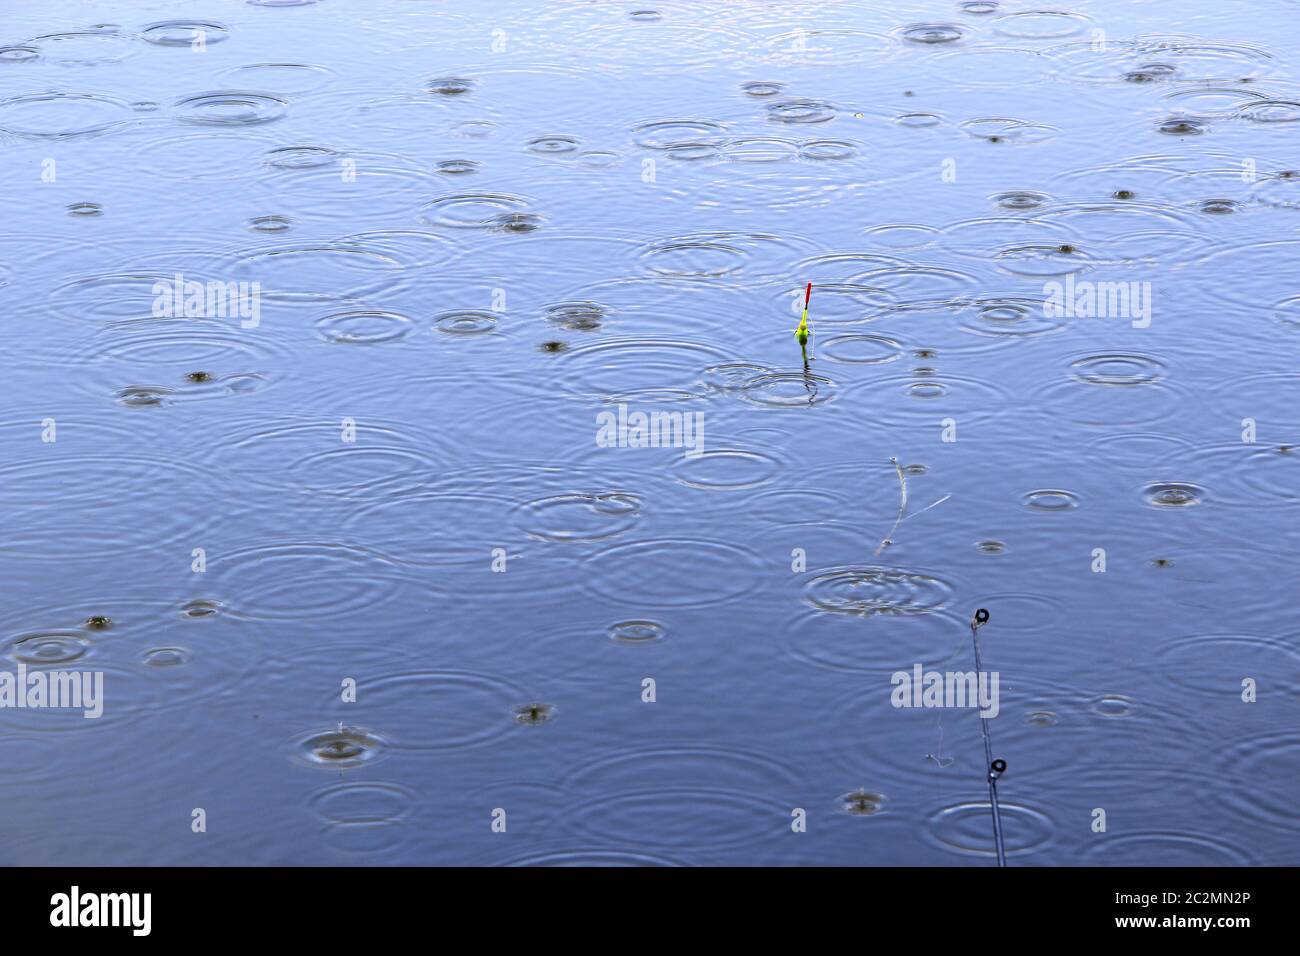 Pioggia sul fiume durante la pesca. Pesca galleggia in acqua mentre piove. Gocce d'acqua cadono sulla superficie o Foto Stock